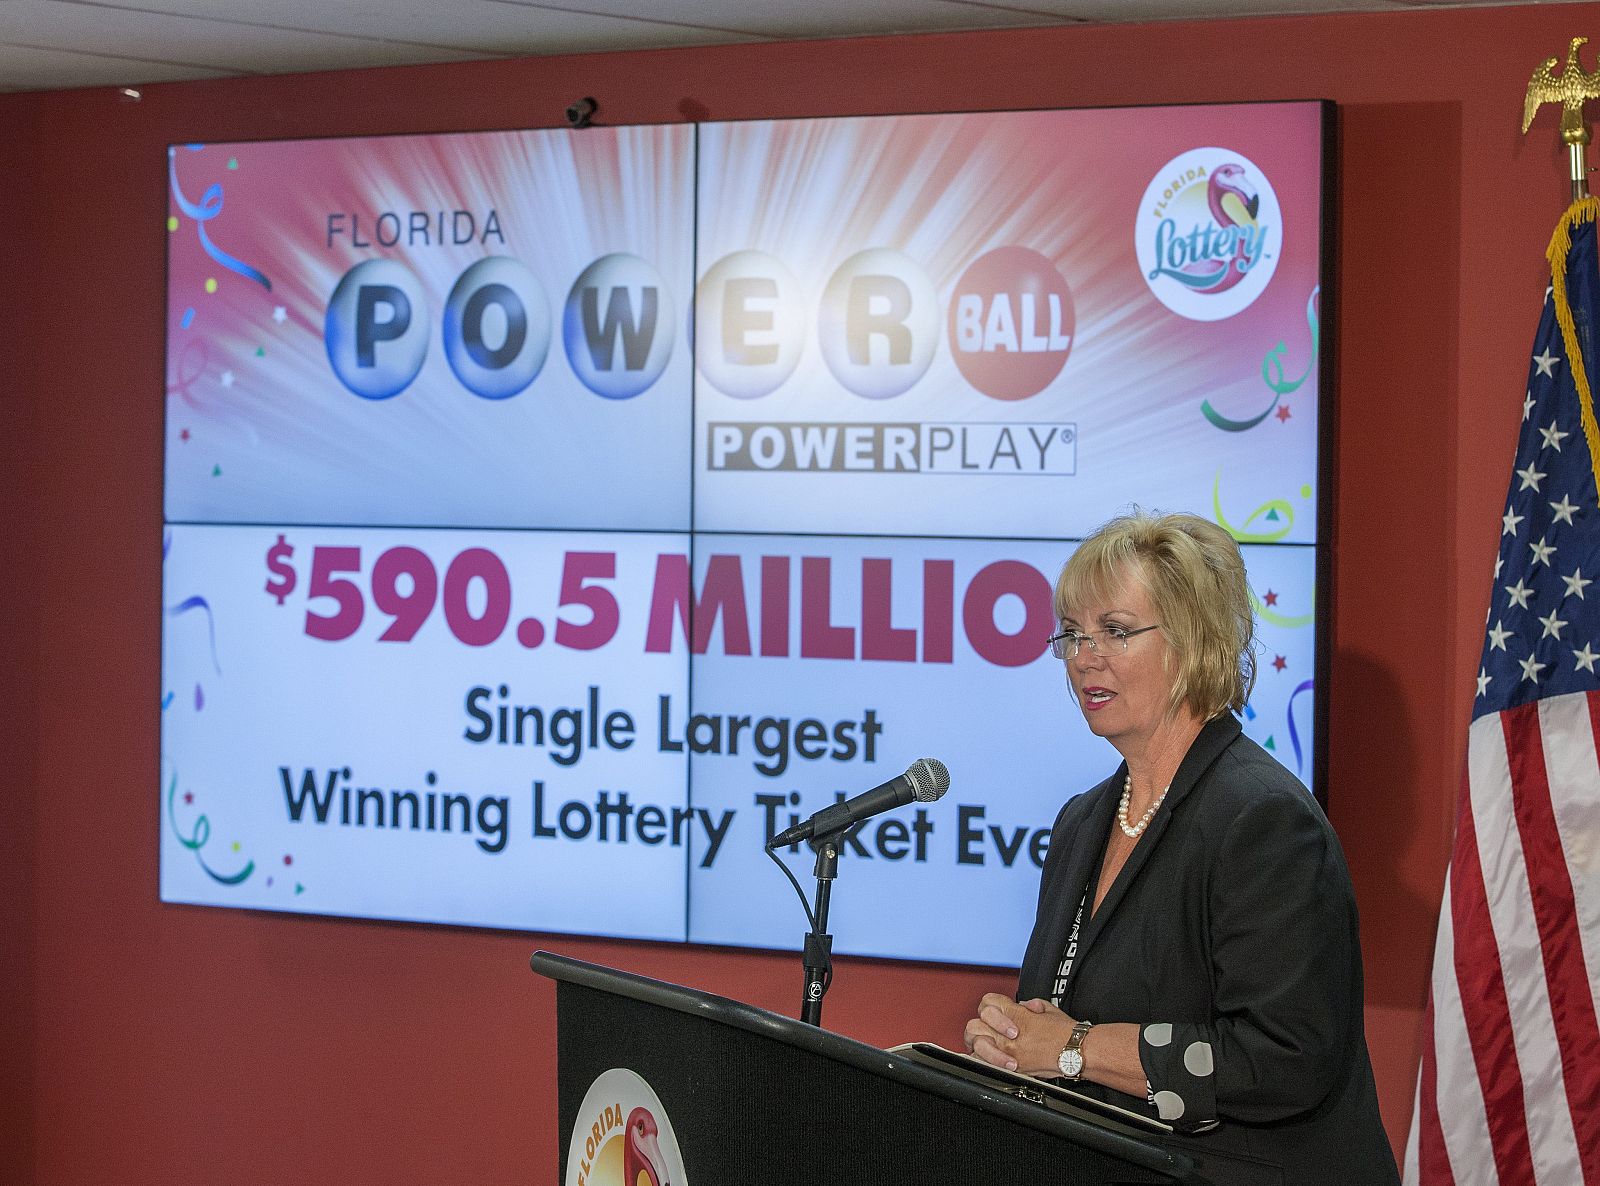 Cynthia F. O'Connel, secretaria de la lotería de Florida, da detalles sobre la ganadora de 590.5 millones de dólares del premio gordo de Powerball